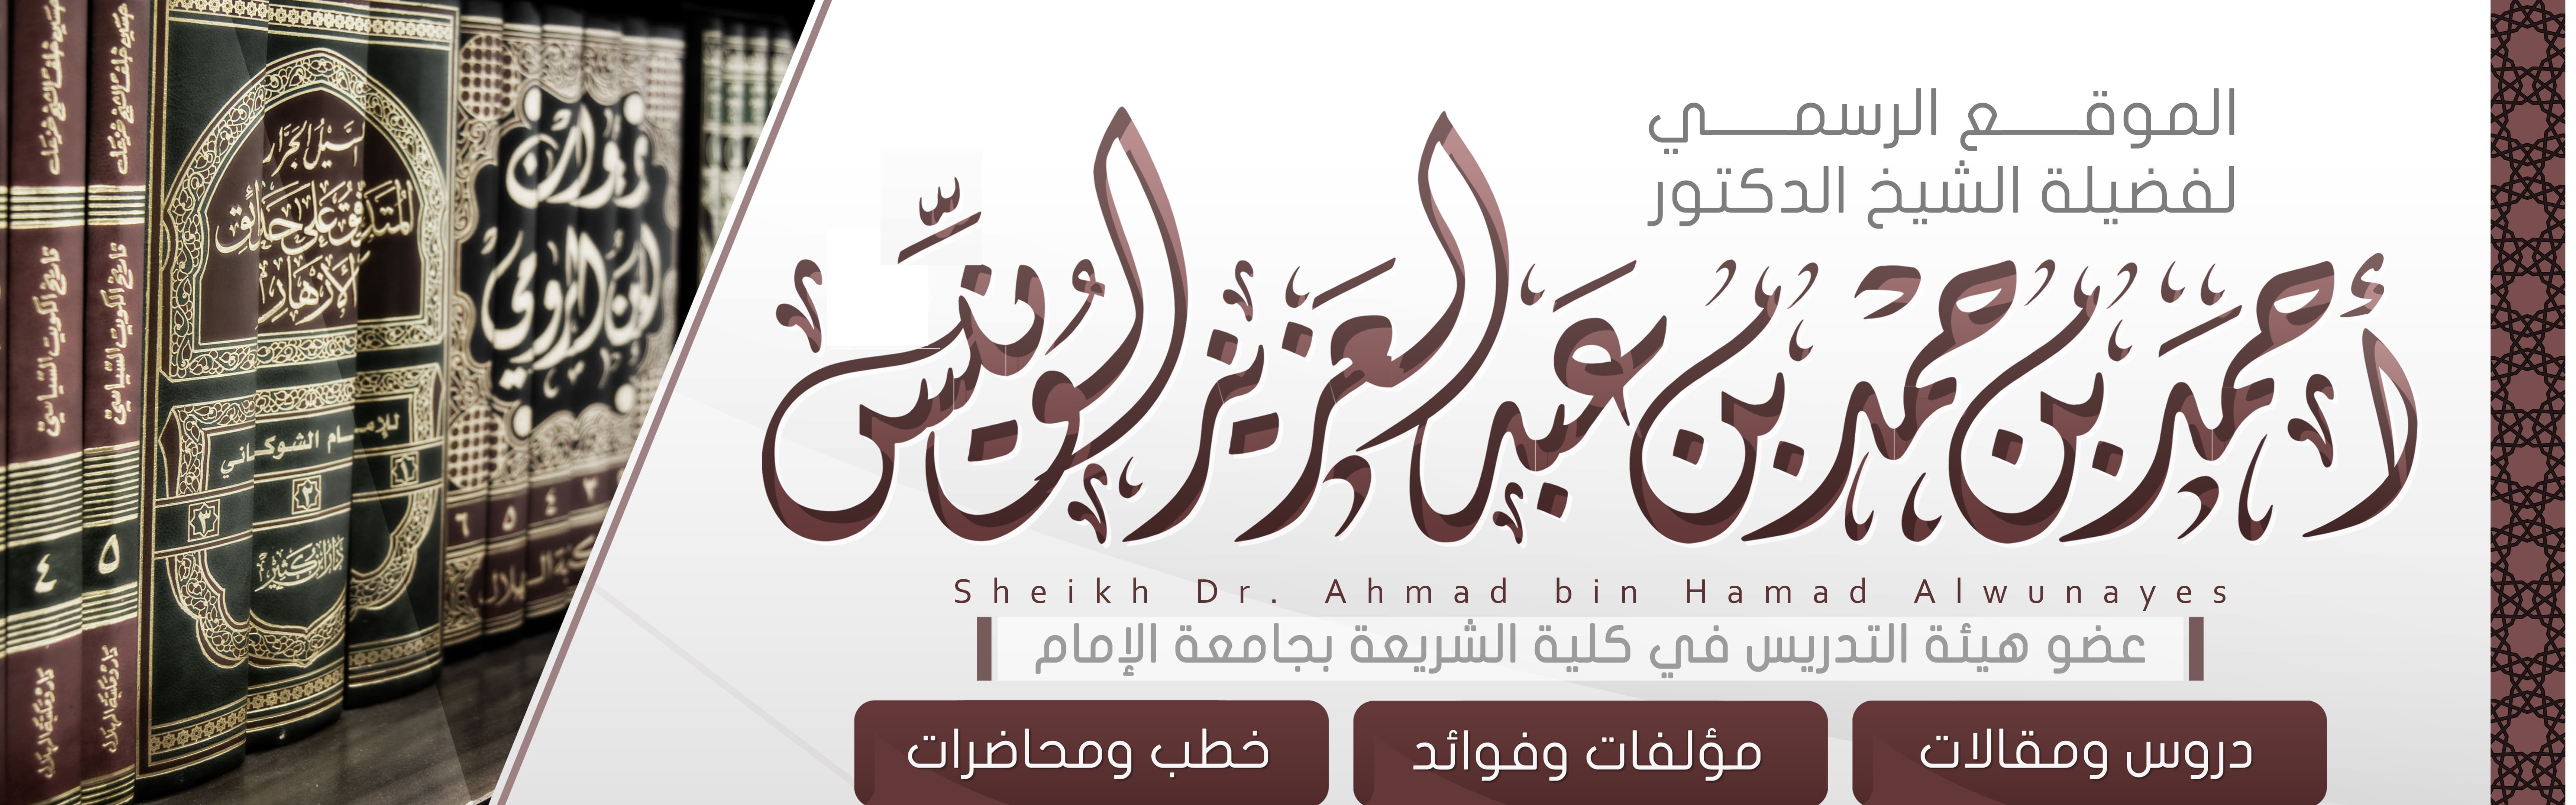 افتتاح الموقع الرسمي لفضيلة الشيخ الدكتور أحمد بن حمد الونيّس حفظه الله